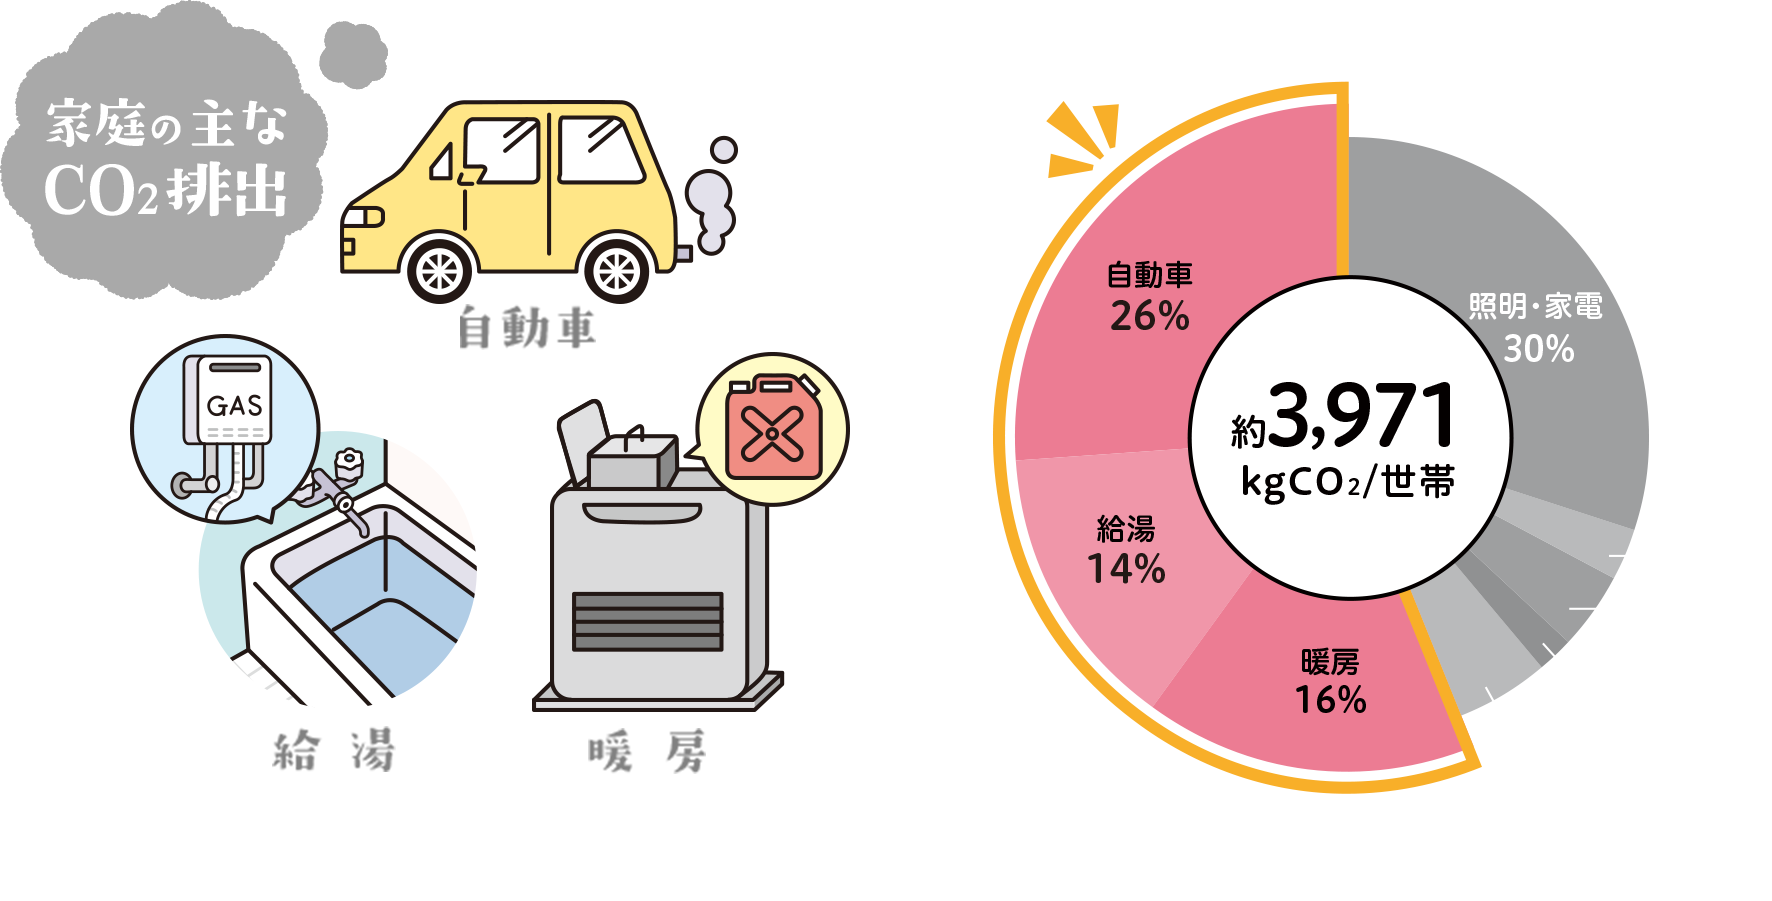 家庭からの用途別Co2排出量割合（2019年度）